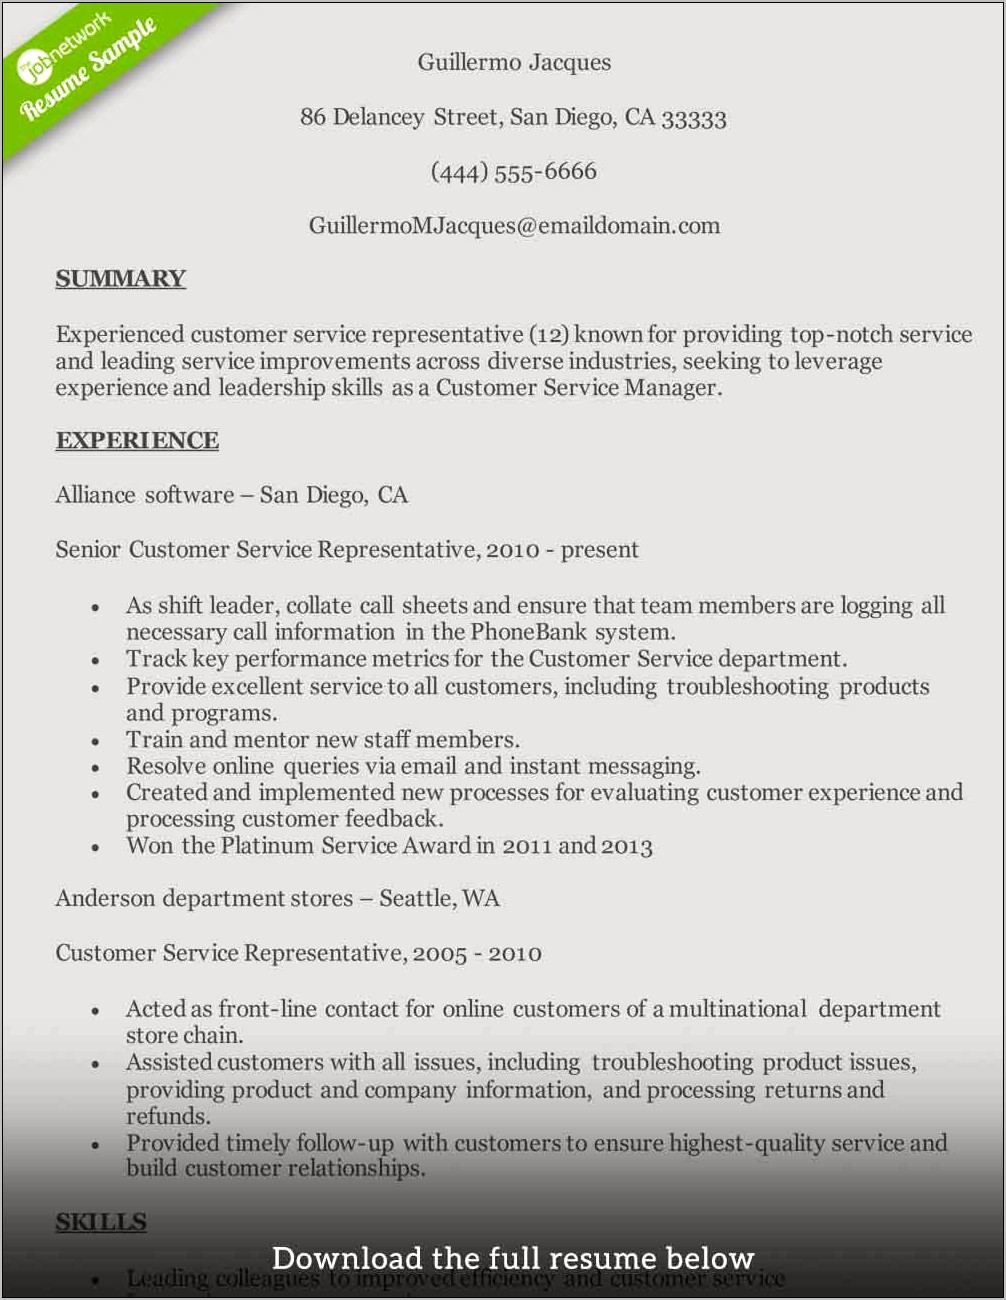 Call Center Skills List For Resume